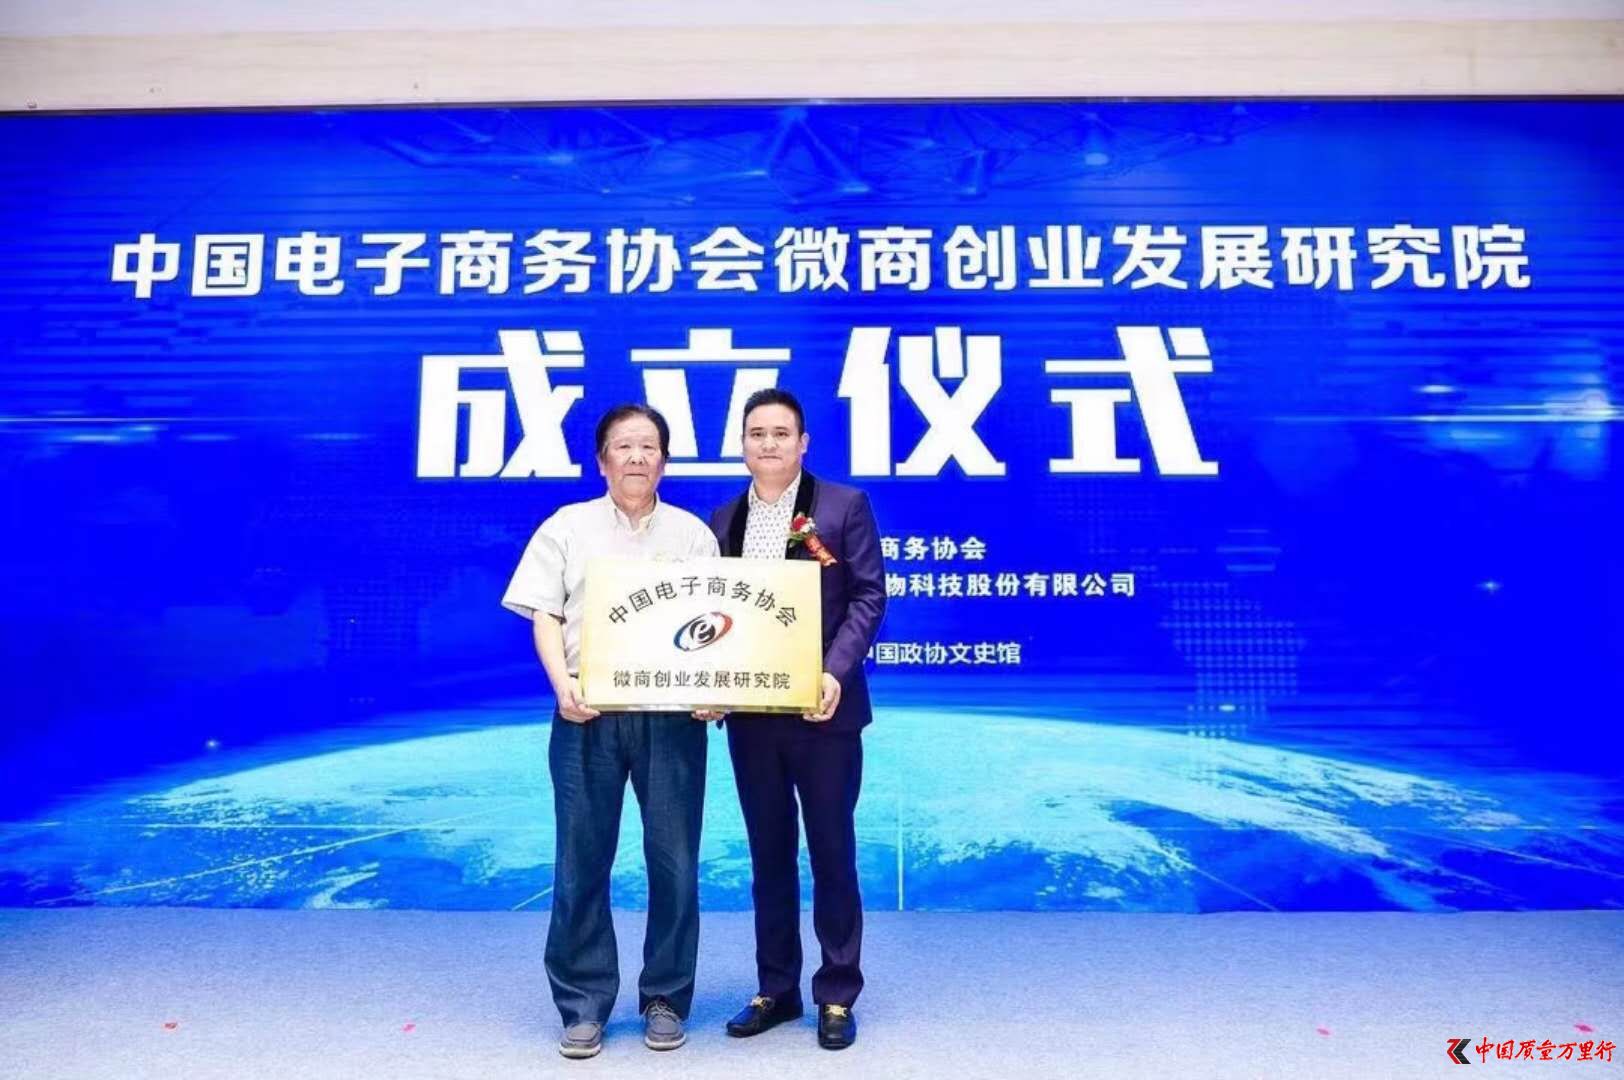 中国电子商务协会微商创业发展研究院将成立